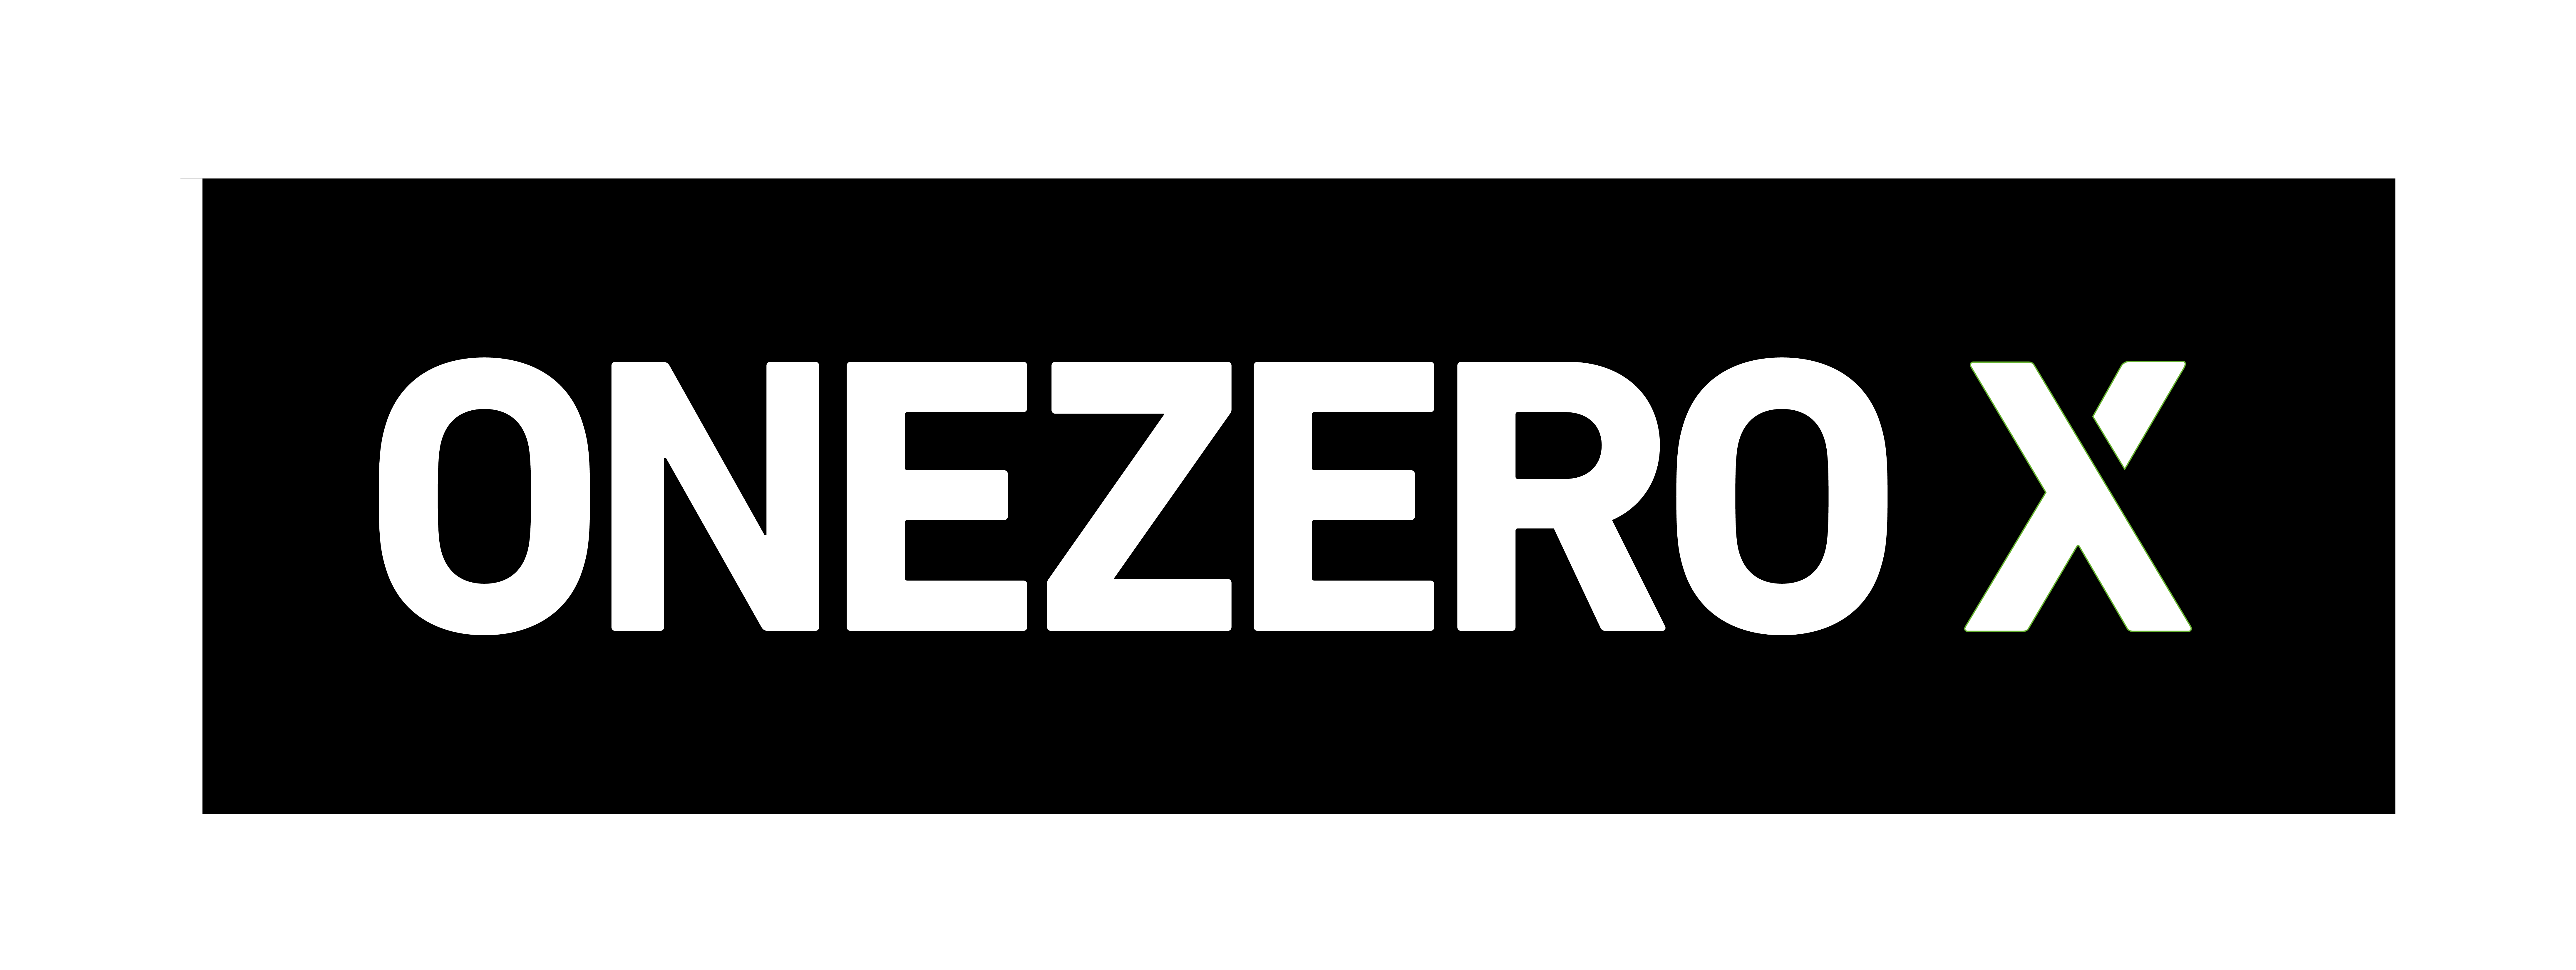 ONEZERX_Logo